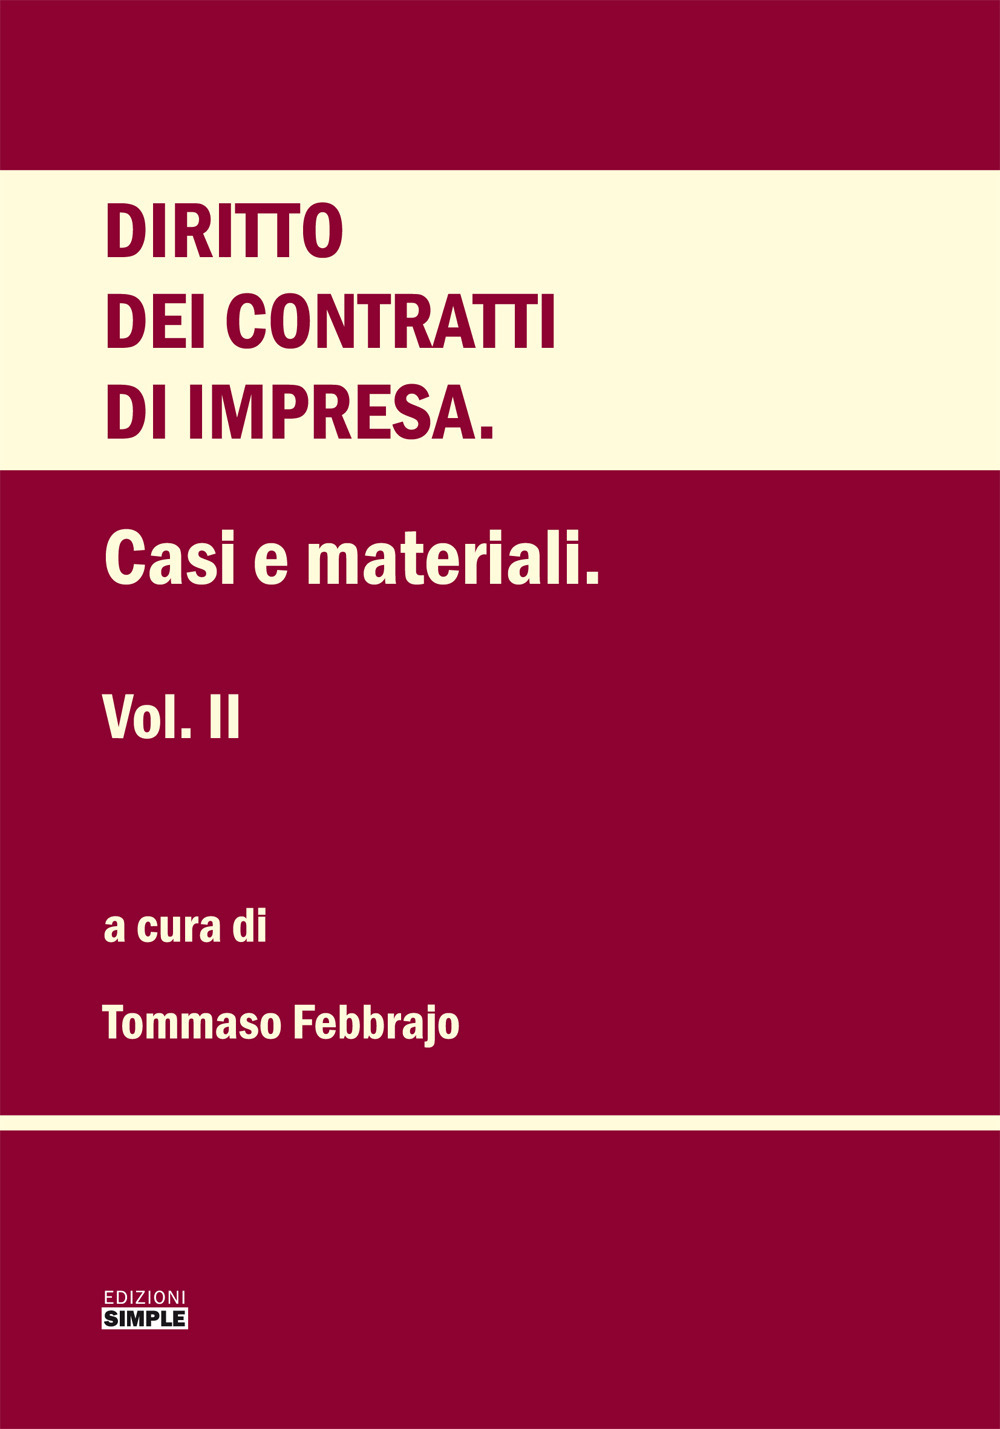 Libri Diritto Dei Contratti D'impresa Vol 02 NUOVO SIGILLATO, EDIZIONE DEL 01/12/2021 SUBITO DISPONIBILE